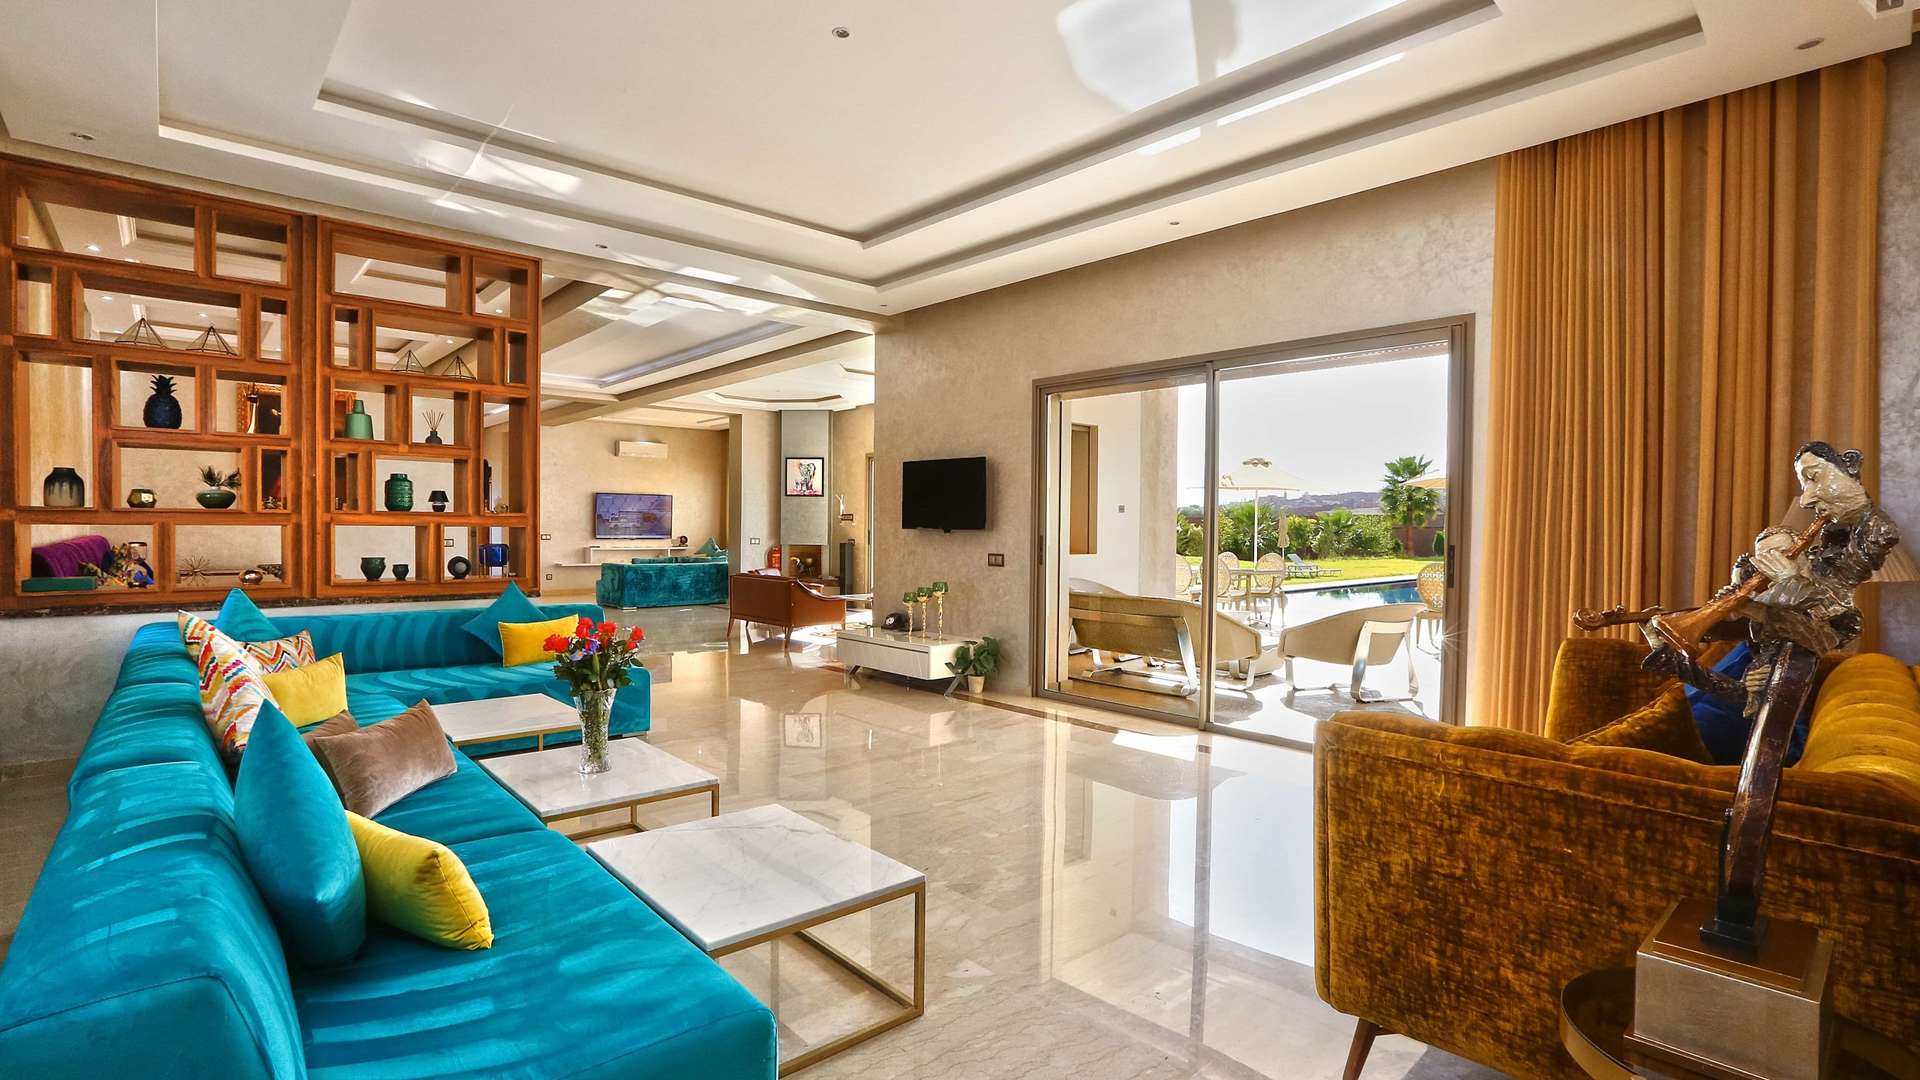 Location de vacances,Villa,Location Saisonnière d'Exception : Palace de prestige avec 8 suites et salle de célébrations polyvalente,Marrakech,Route Amizmiz